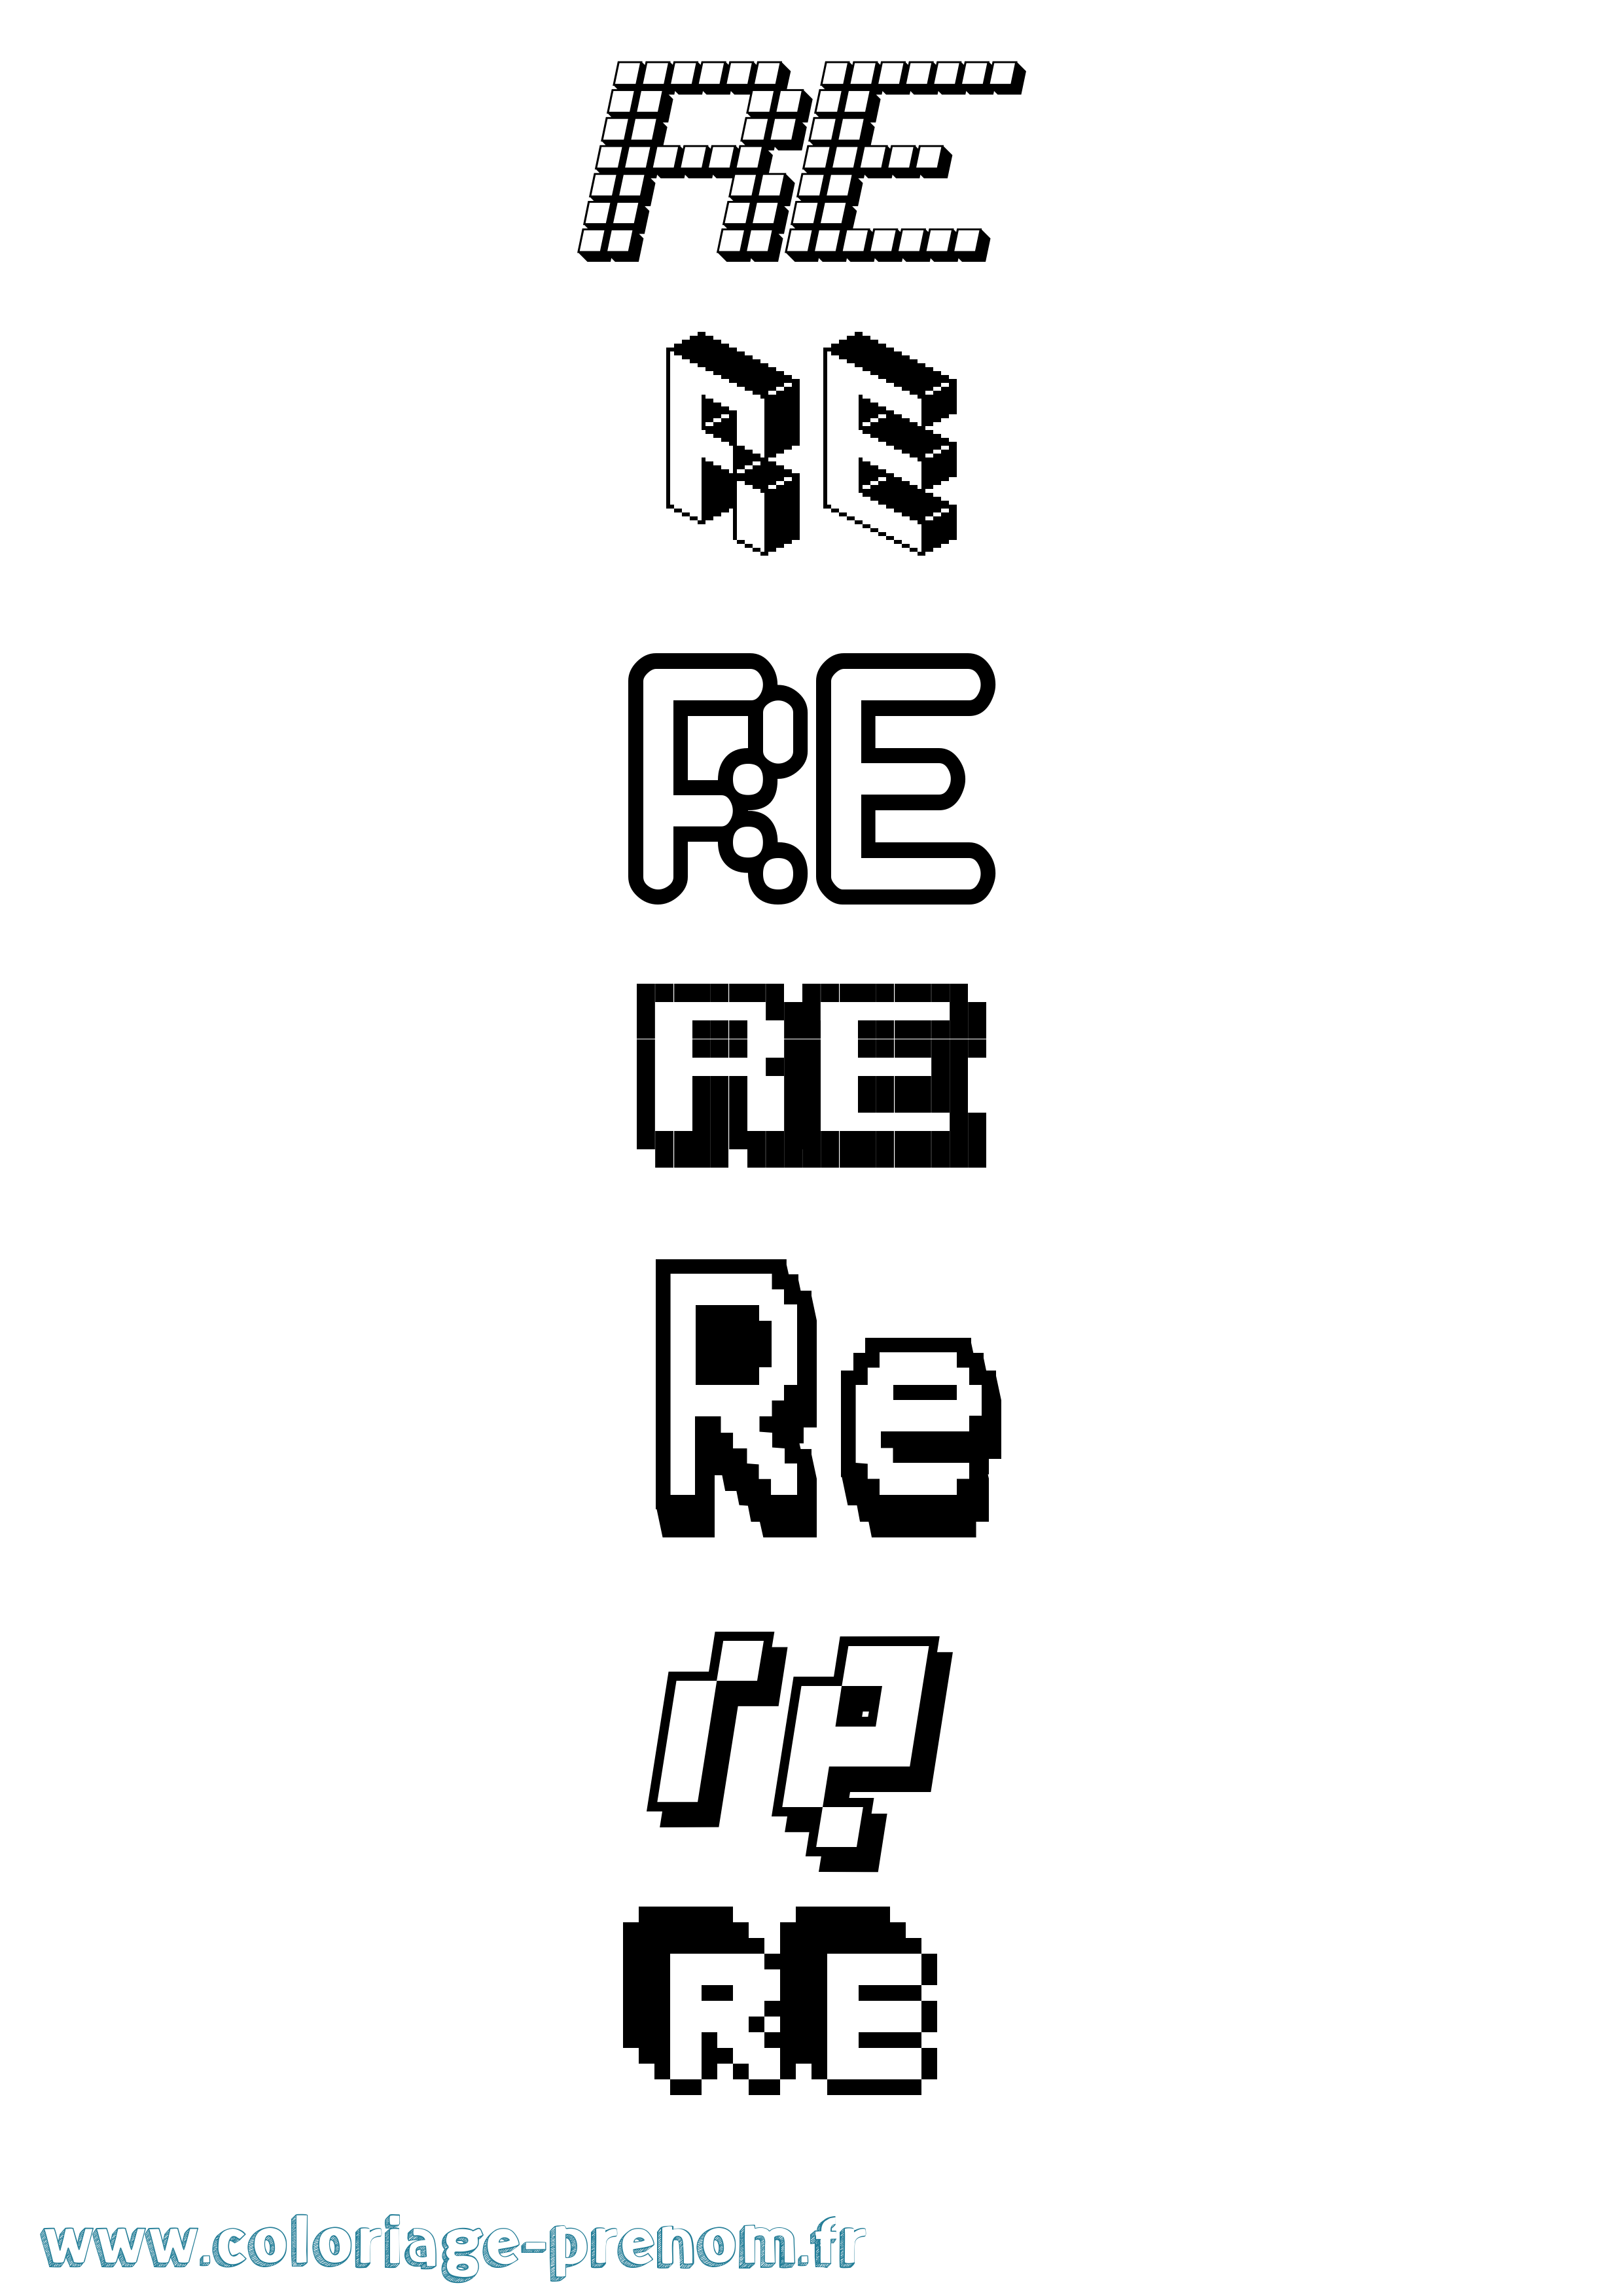 Coloriage prénom Re Pixel